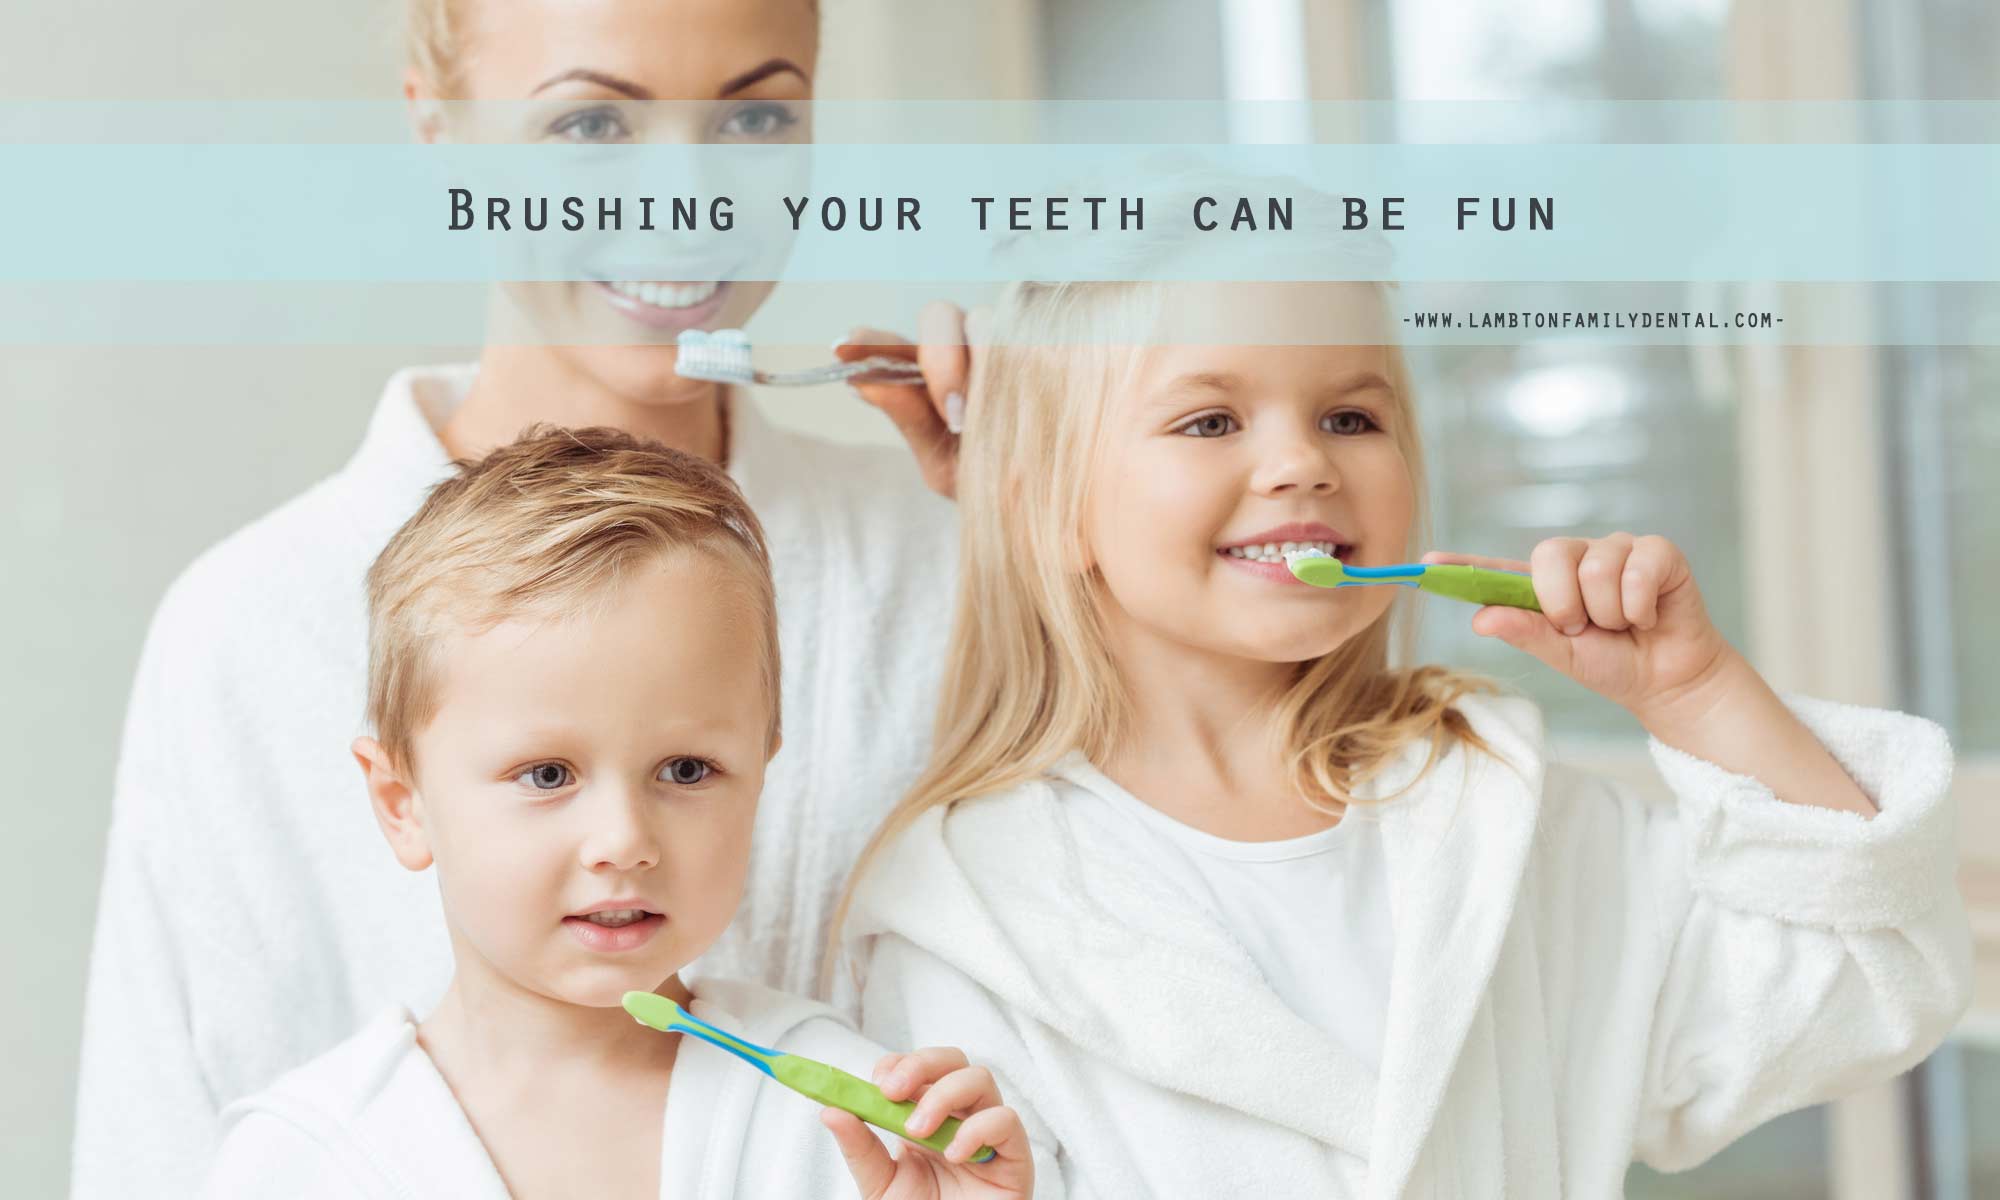 Brushing your teeth can be fun